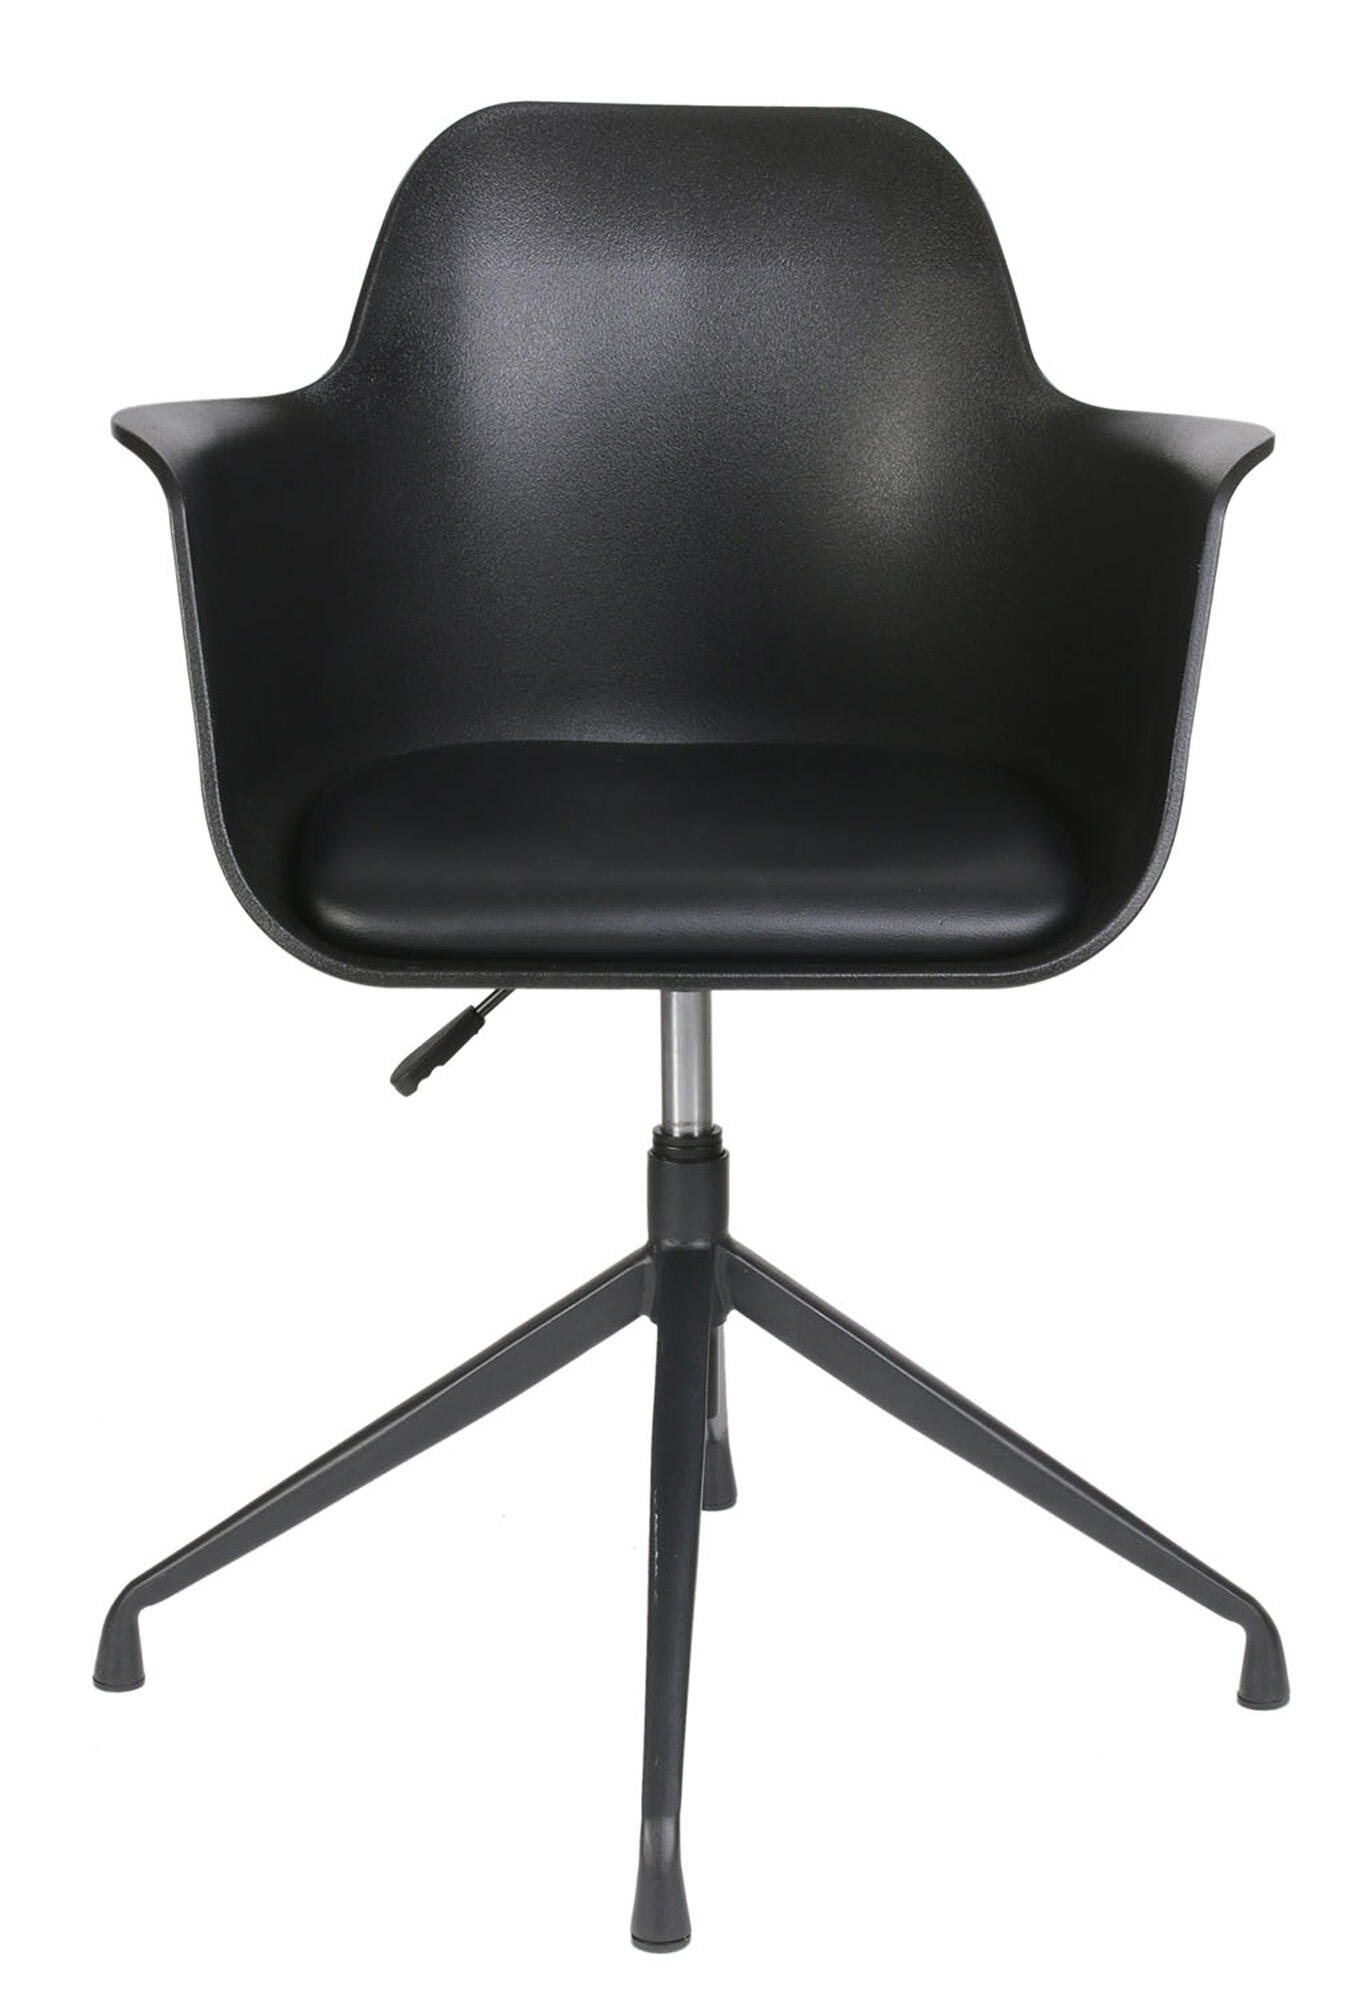 Set de 2 sillas de comedor chicago de plástico color negro de 78x57,5x60cm